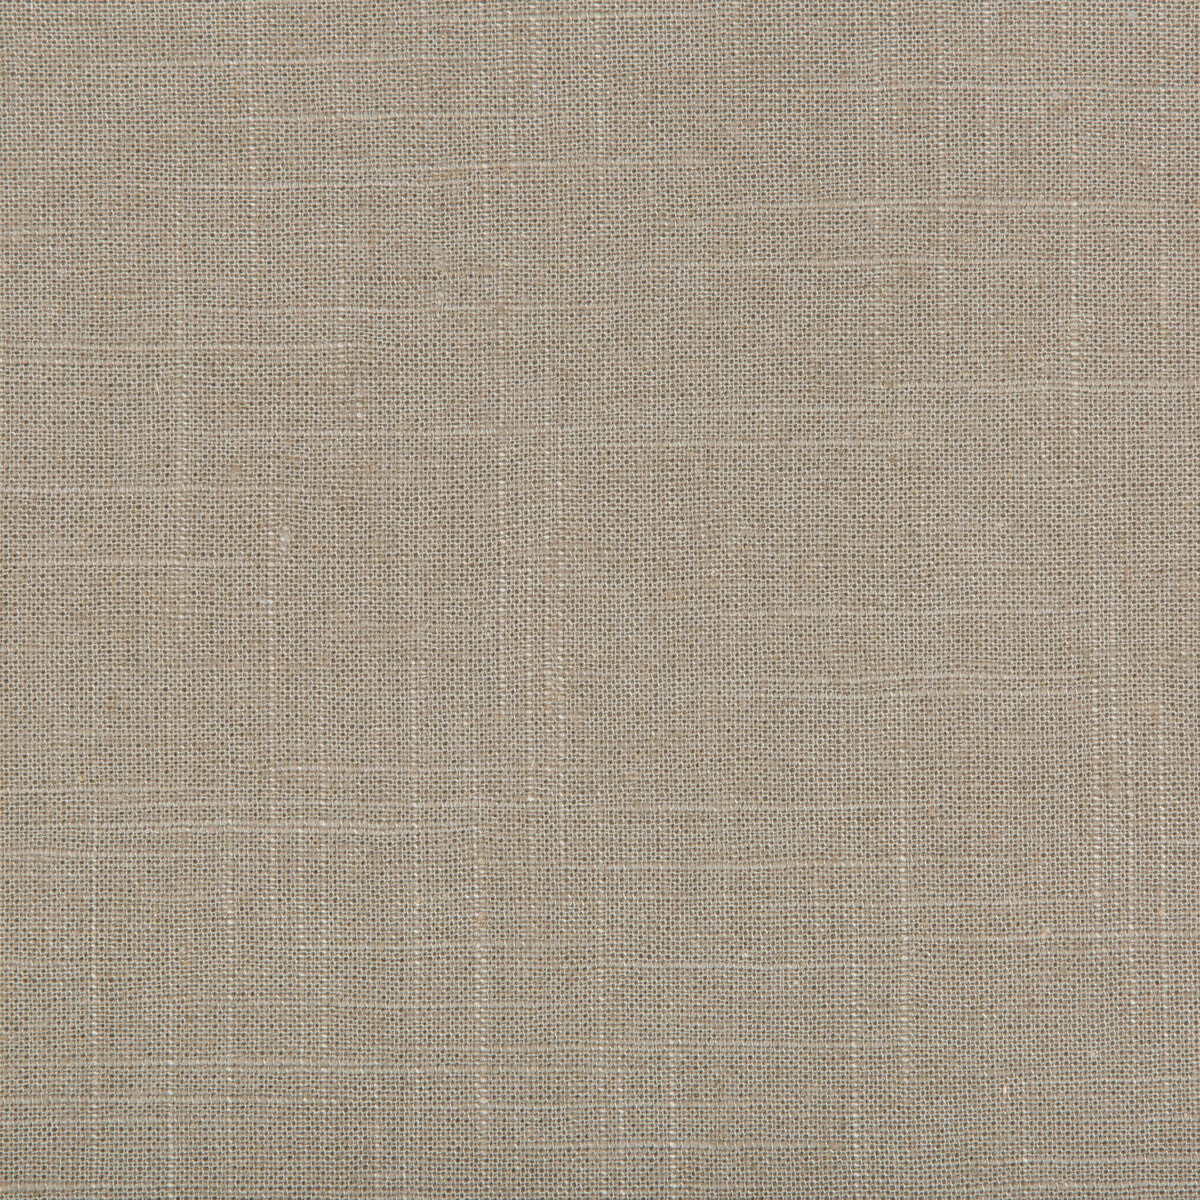 Kravet Basics fabric in 30808-1106 color - pattern 30808.1106.0 - by Kravet Basics